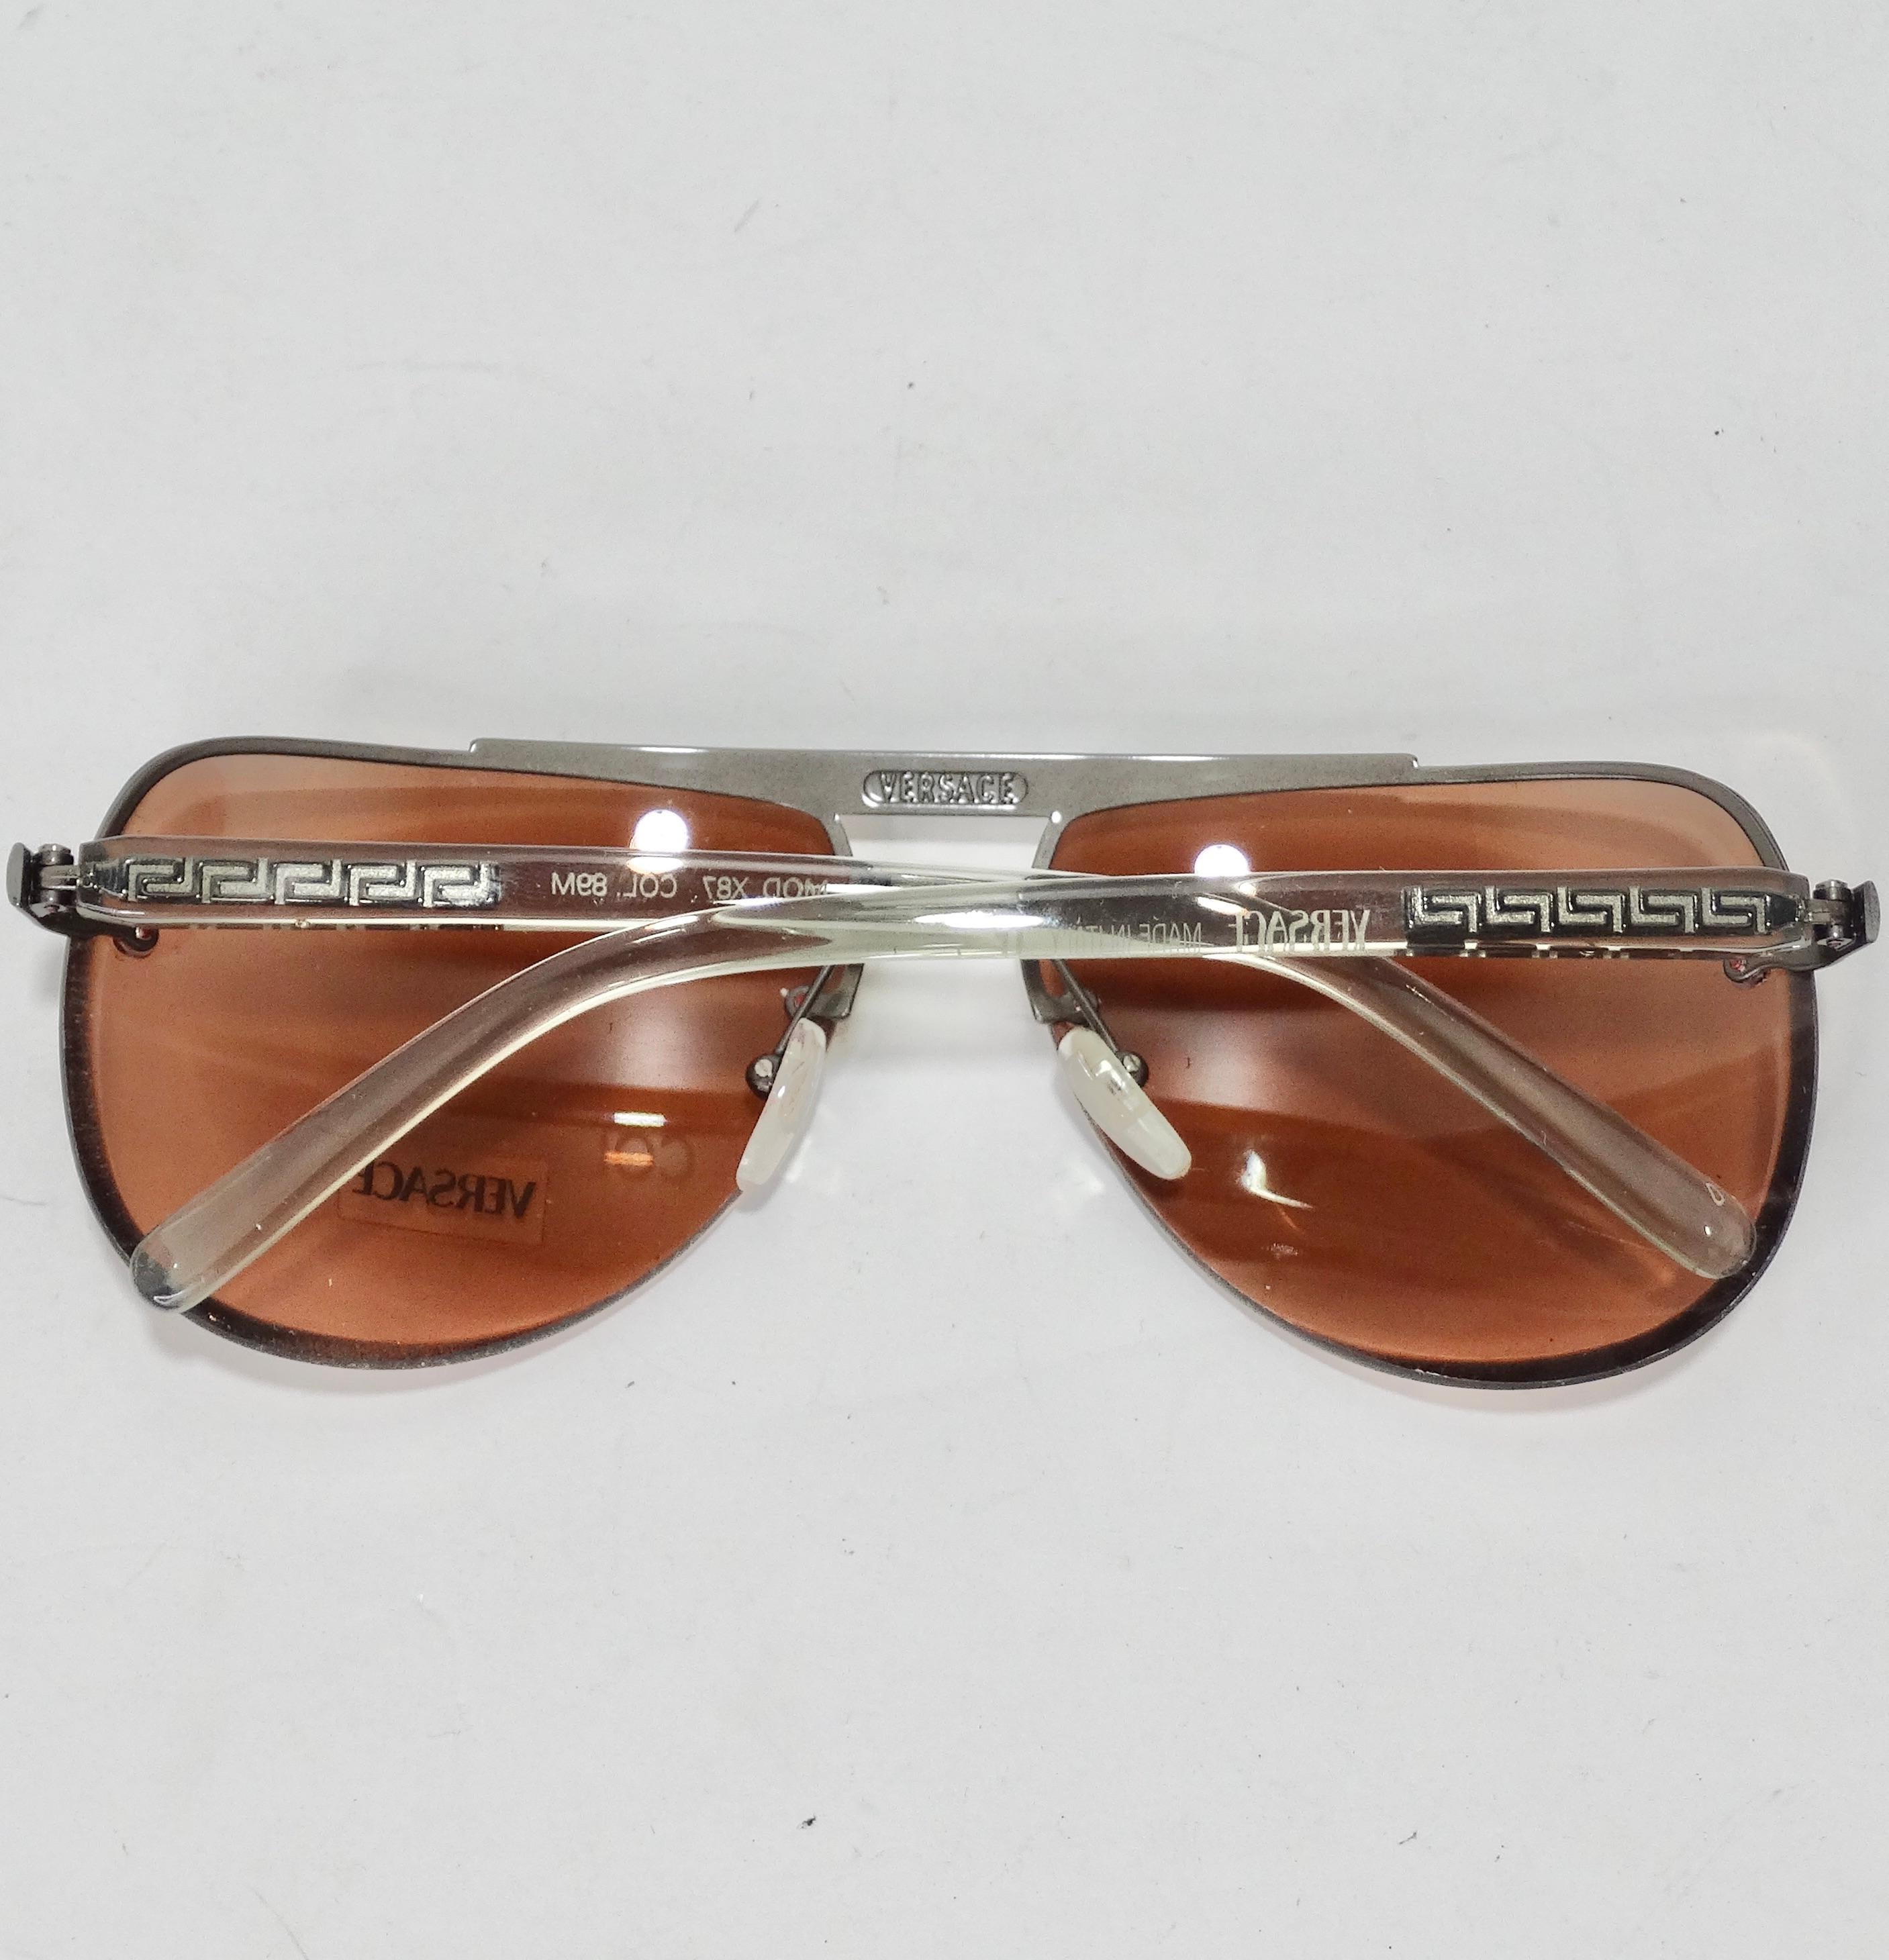 Mettez la main sur ces incroyables lunettes de soleil de Versace, datant des années 1990 ! Les lunettes de soleil parfaites de style aviateur sont dotées de verres roses poussiéreux et de détails argentés. C'est une paire de lunettes de soleil